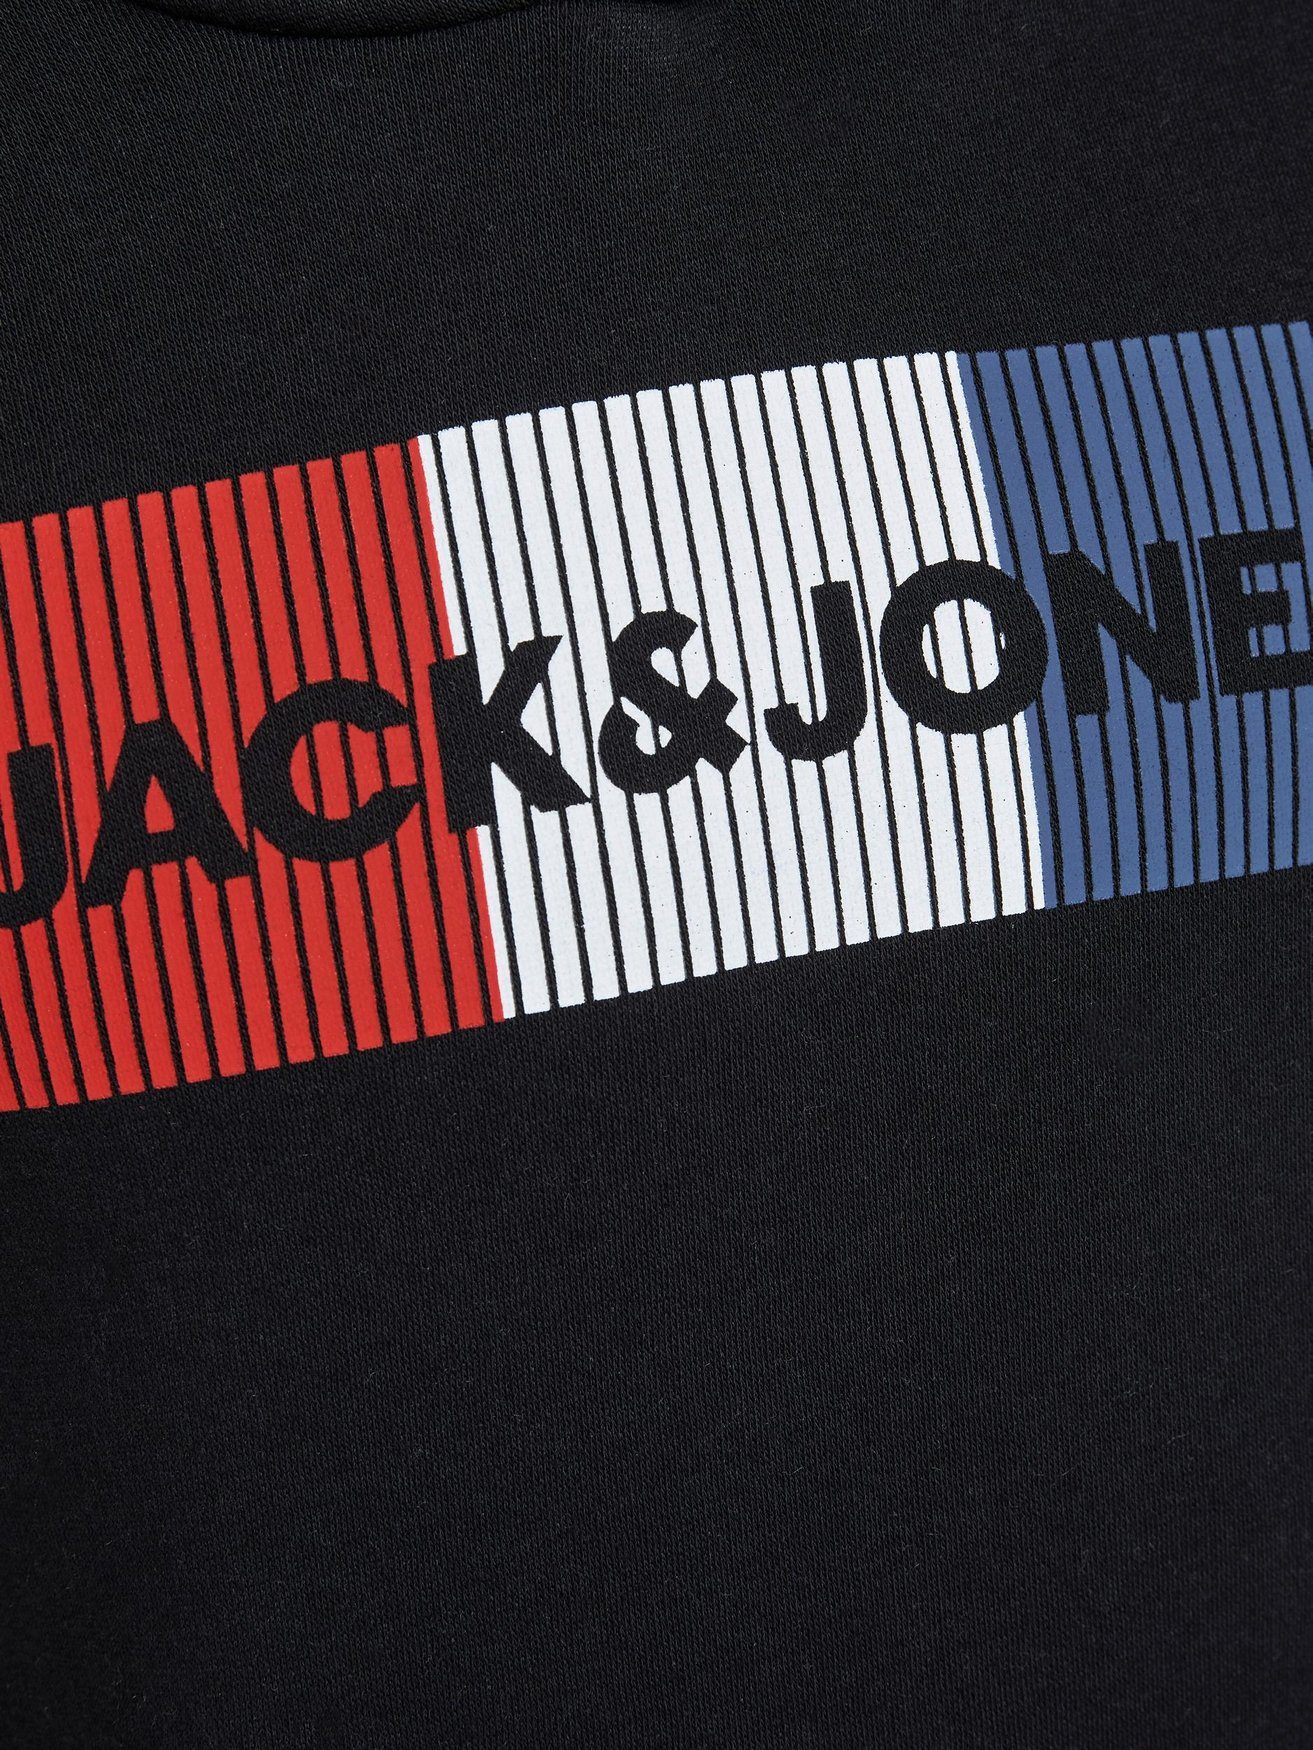 Jack & Jones JJECORP Hoodie Hoodie in Schwarz Kapuzen Logo 6502 Sweater Pullover